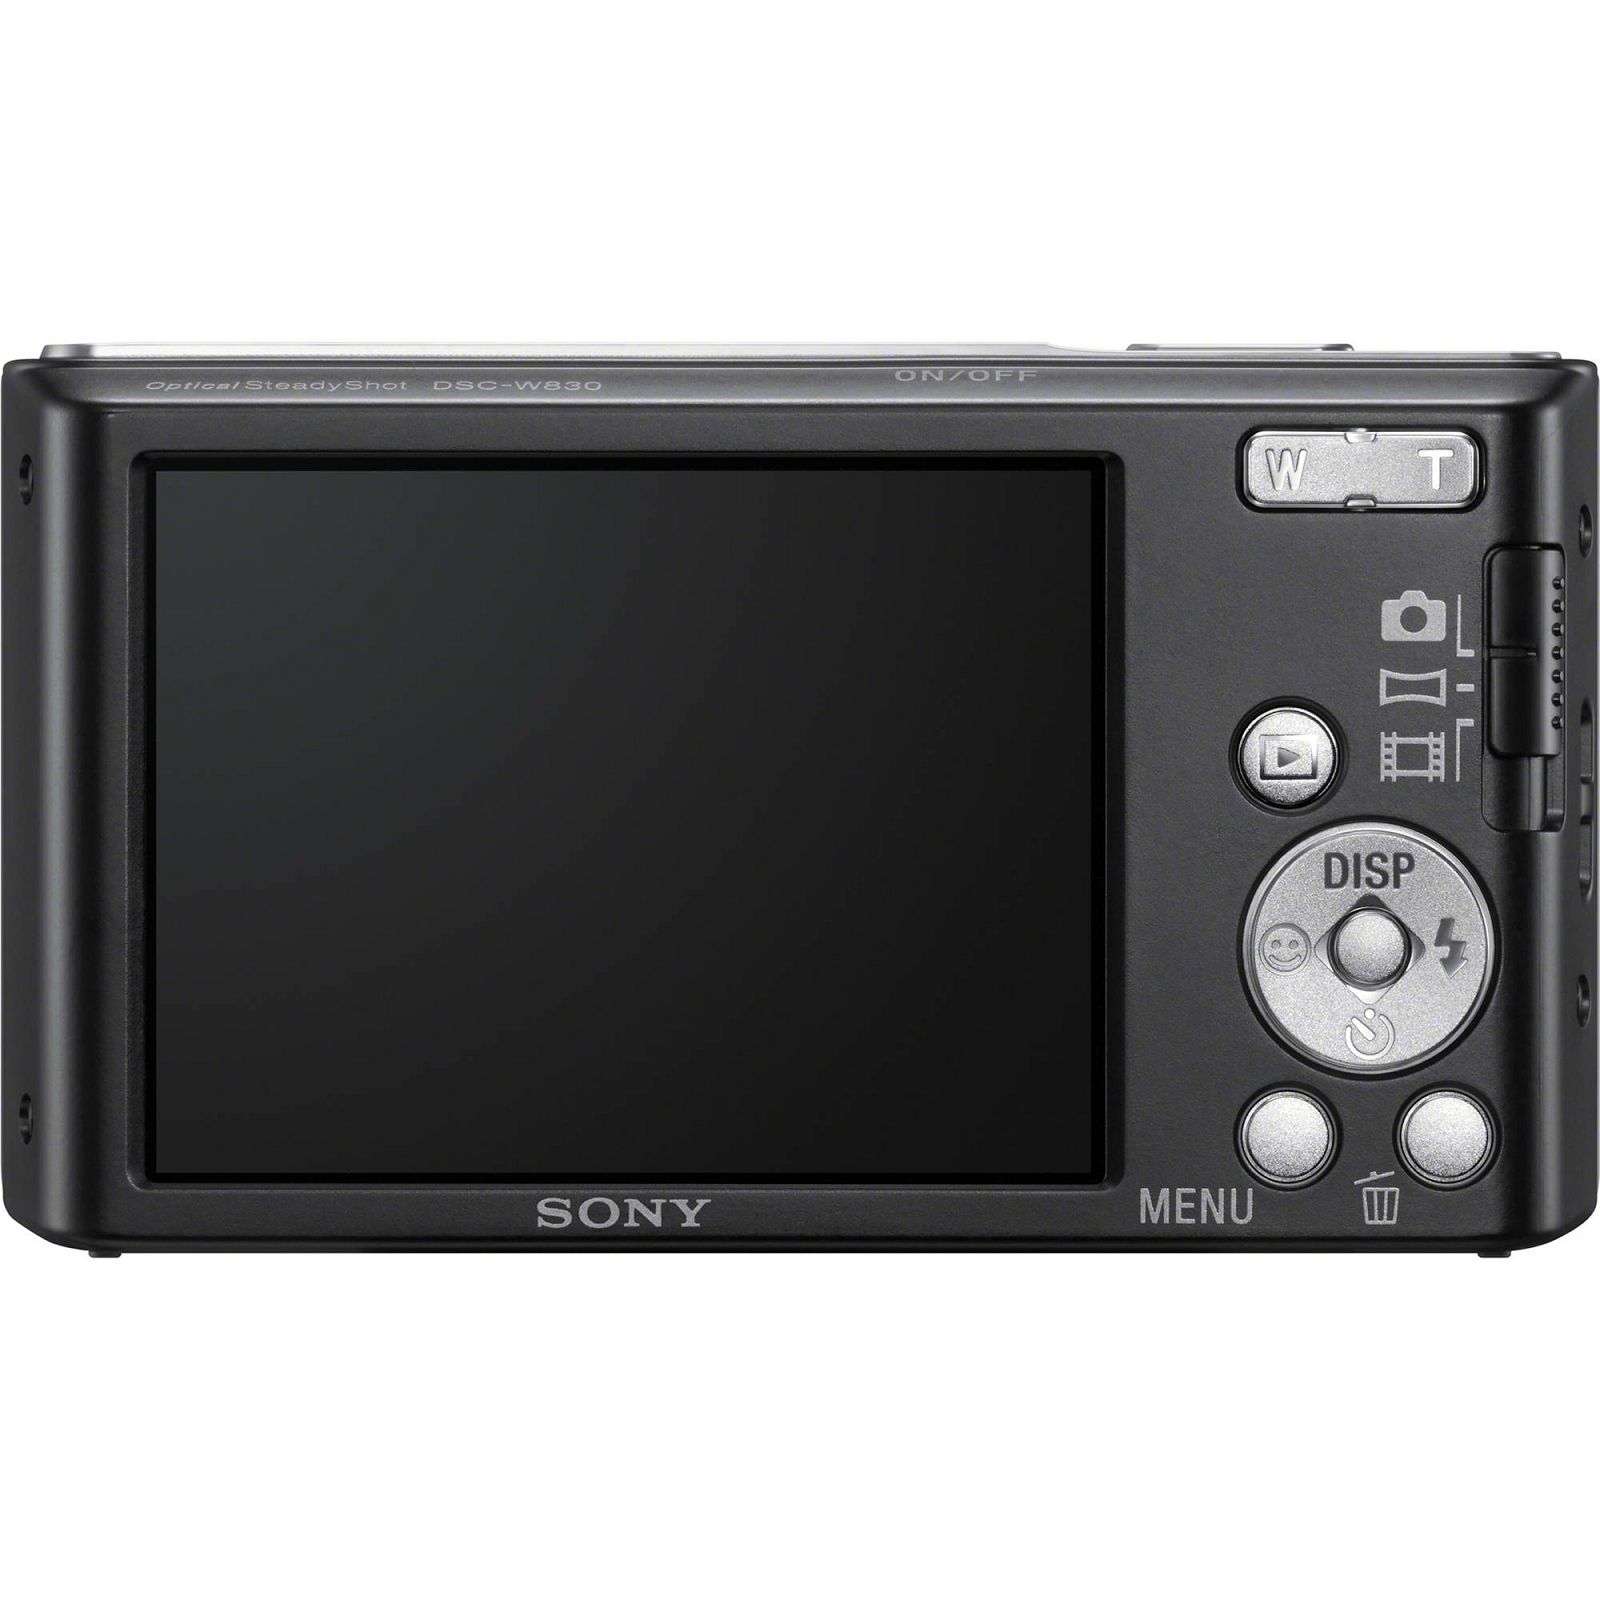 Sony Cyber-shot DSC-W830 Black crni Digitalni fotoaparat Digital Camera DSC-W830B DSCW830B 20.1Mp 8x zoom (DSCW830B.CE3)